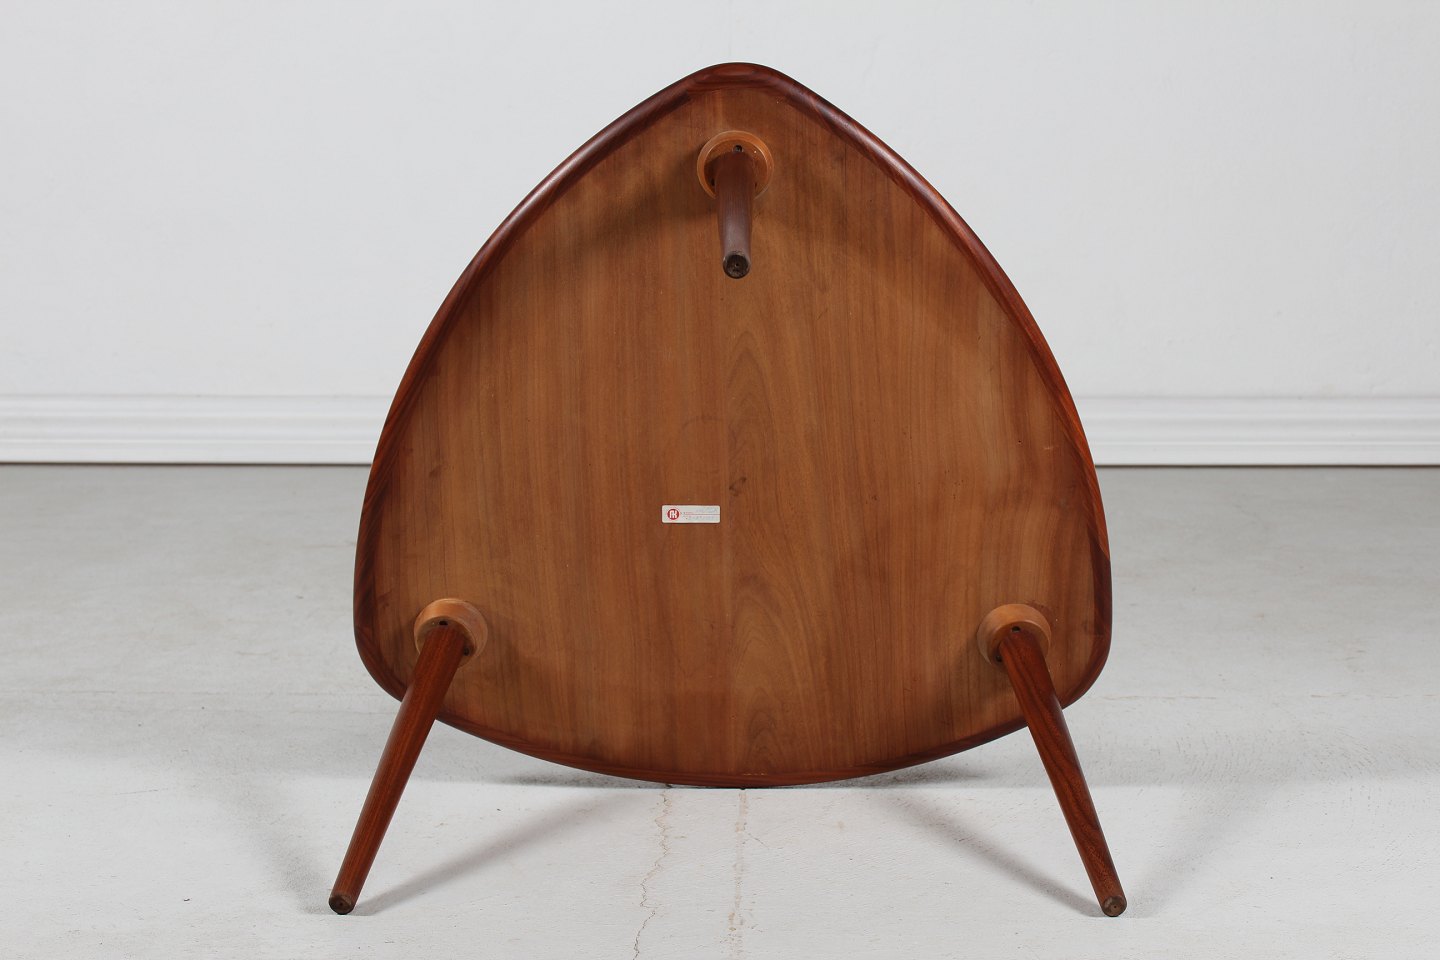 Svarende til flydende Spektakulær Stari Antik - Anton Kildeberg * * Organisk formet sofabord af teaktræ - Anton  Kildeberg * * Organisk formet sofabord af teaktræ